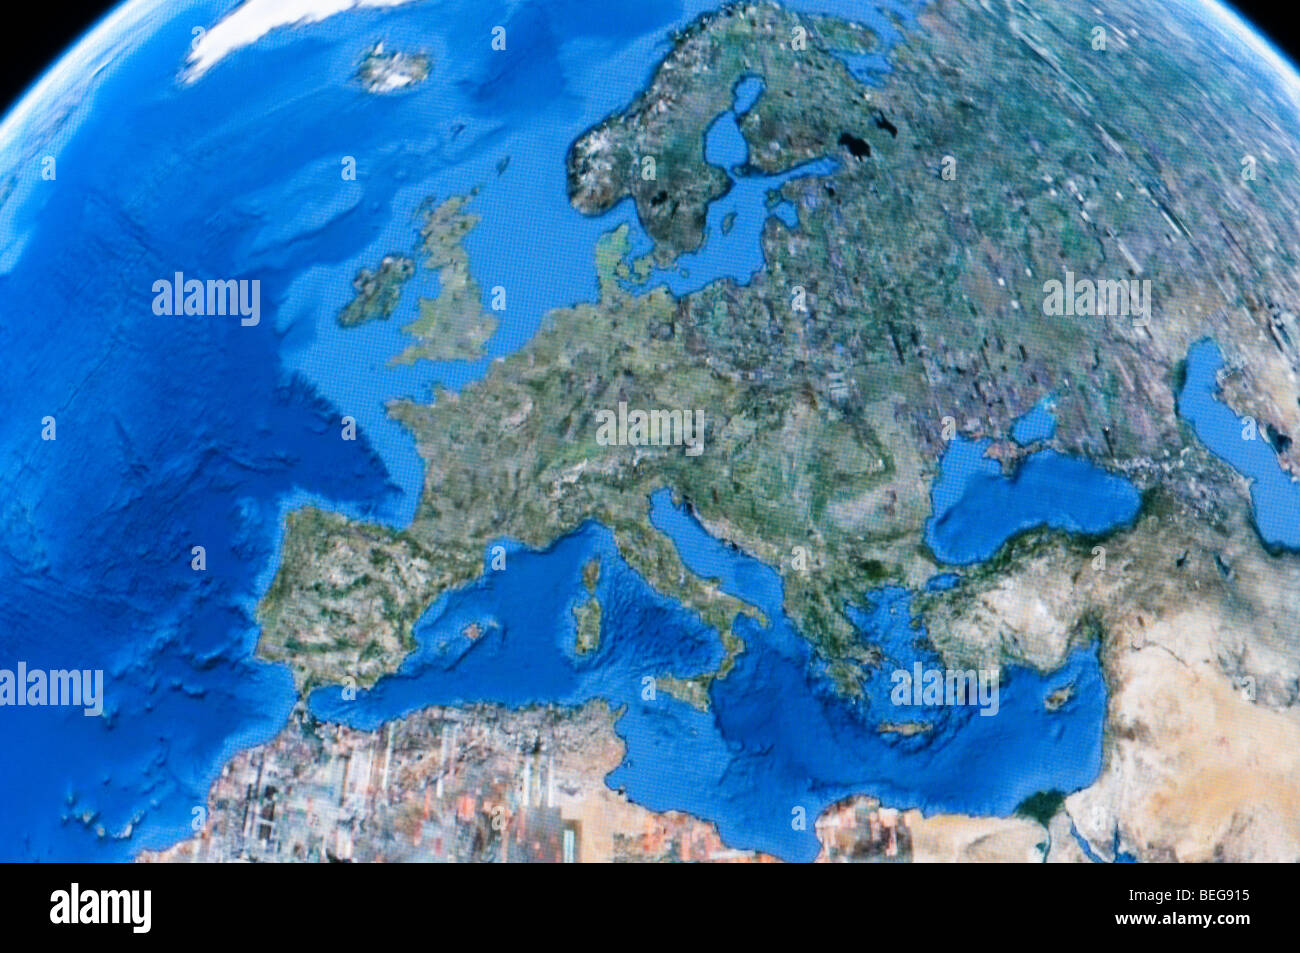 Europa wie auf Google Earth zu sehen Stockfoto